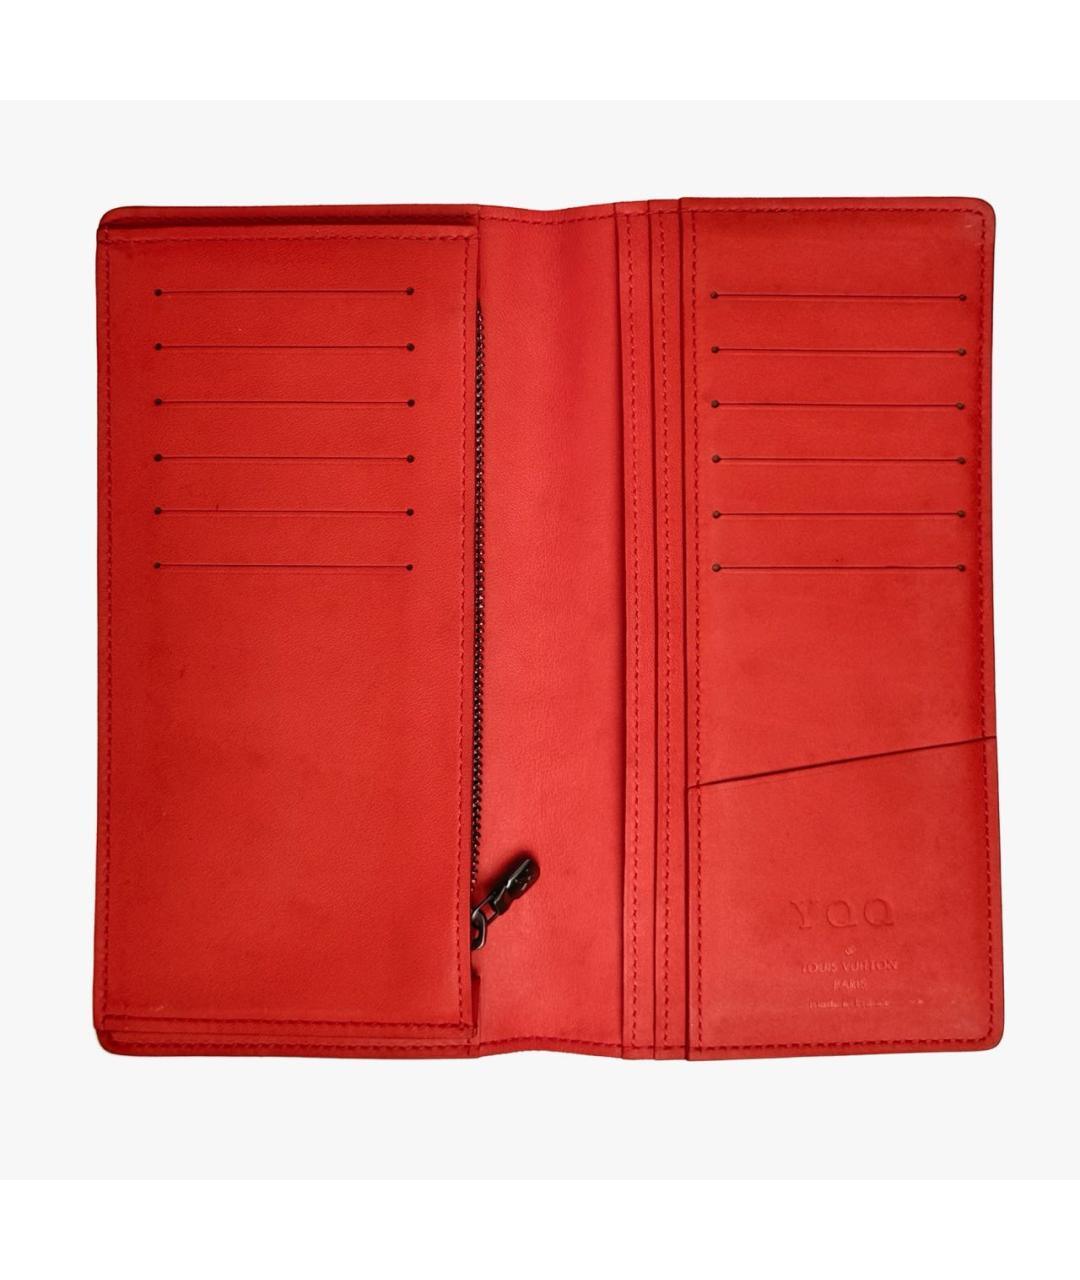 LOUIS VUITTON PRE-OWNED Красный кожаный кошелек, фото 3